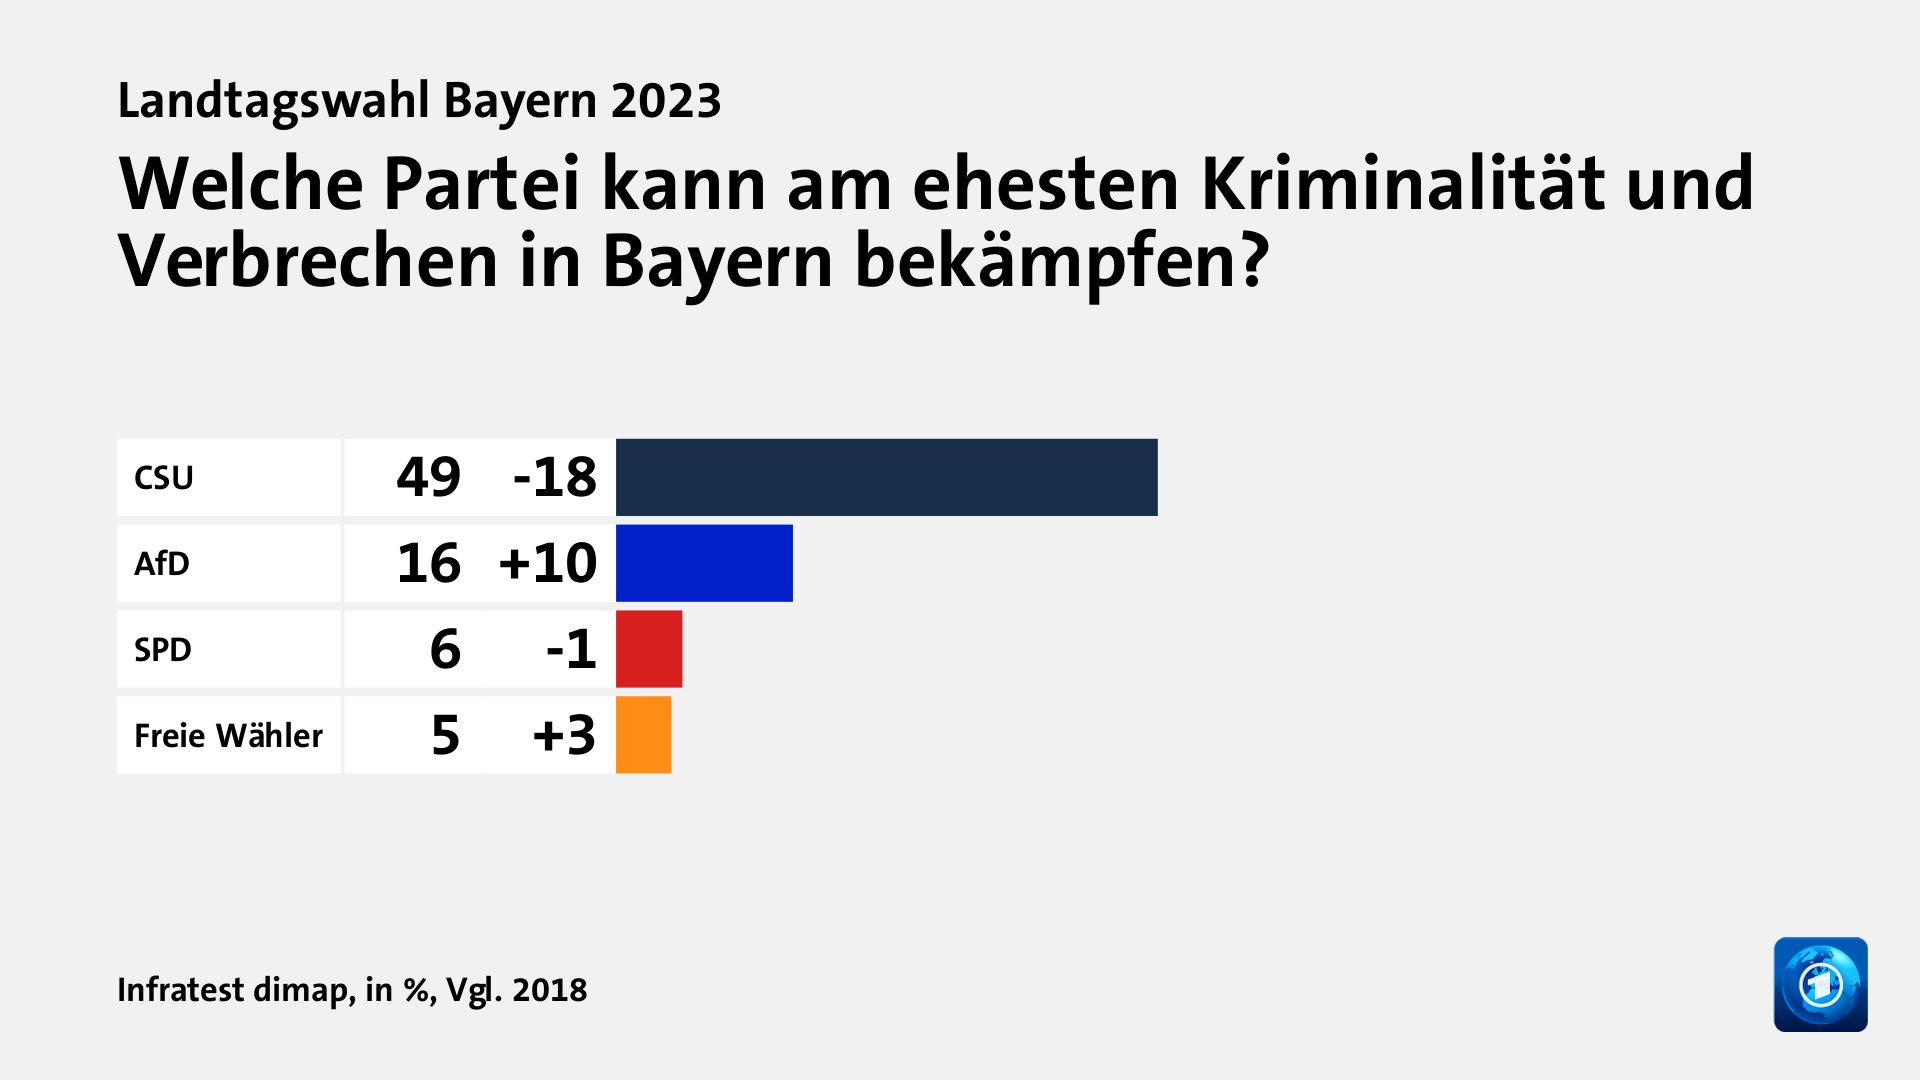 Welche Partei kann am ehesten Kriminalität und Verbrechen in Bayern bekämpfen?, in %, Vgl. 2018: CSU 49, AfD 16, SPD 6, Freie Wähler 5, Quelle: Infratest dimap